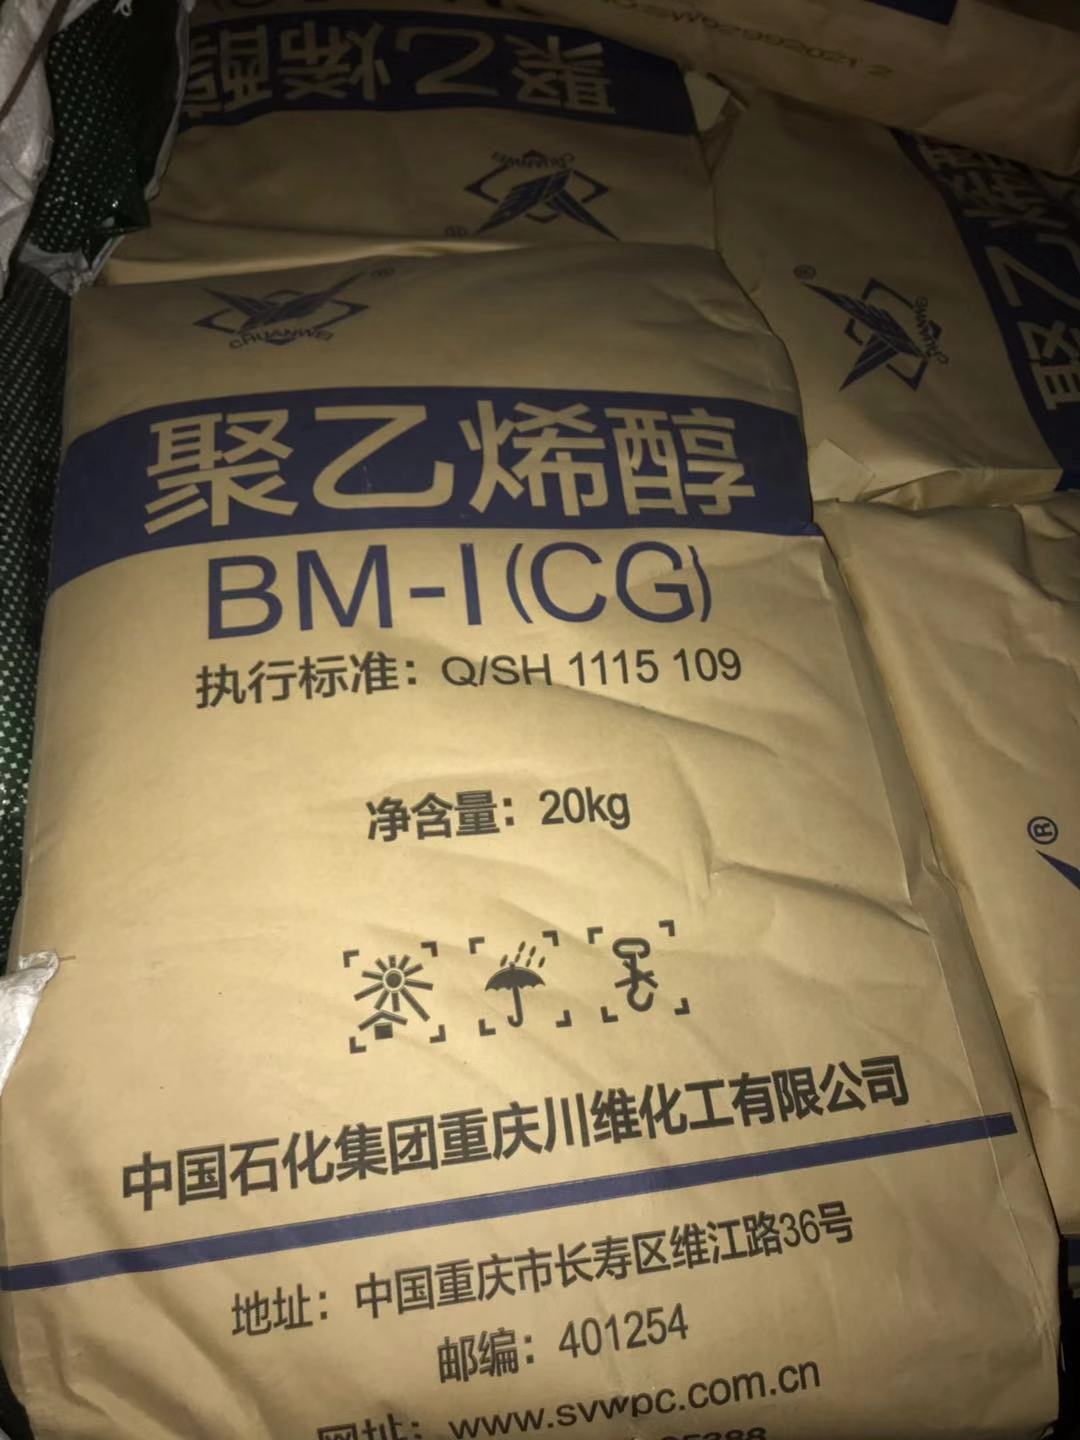 川维 聚乙烯醇BM-1  现货 颗粒 粉状    现货